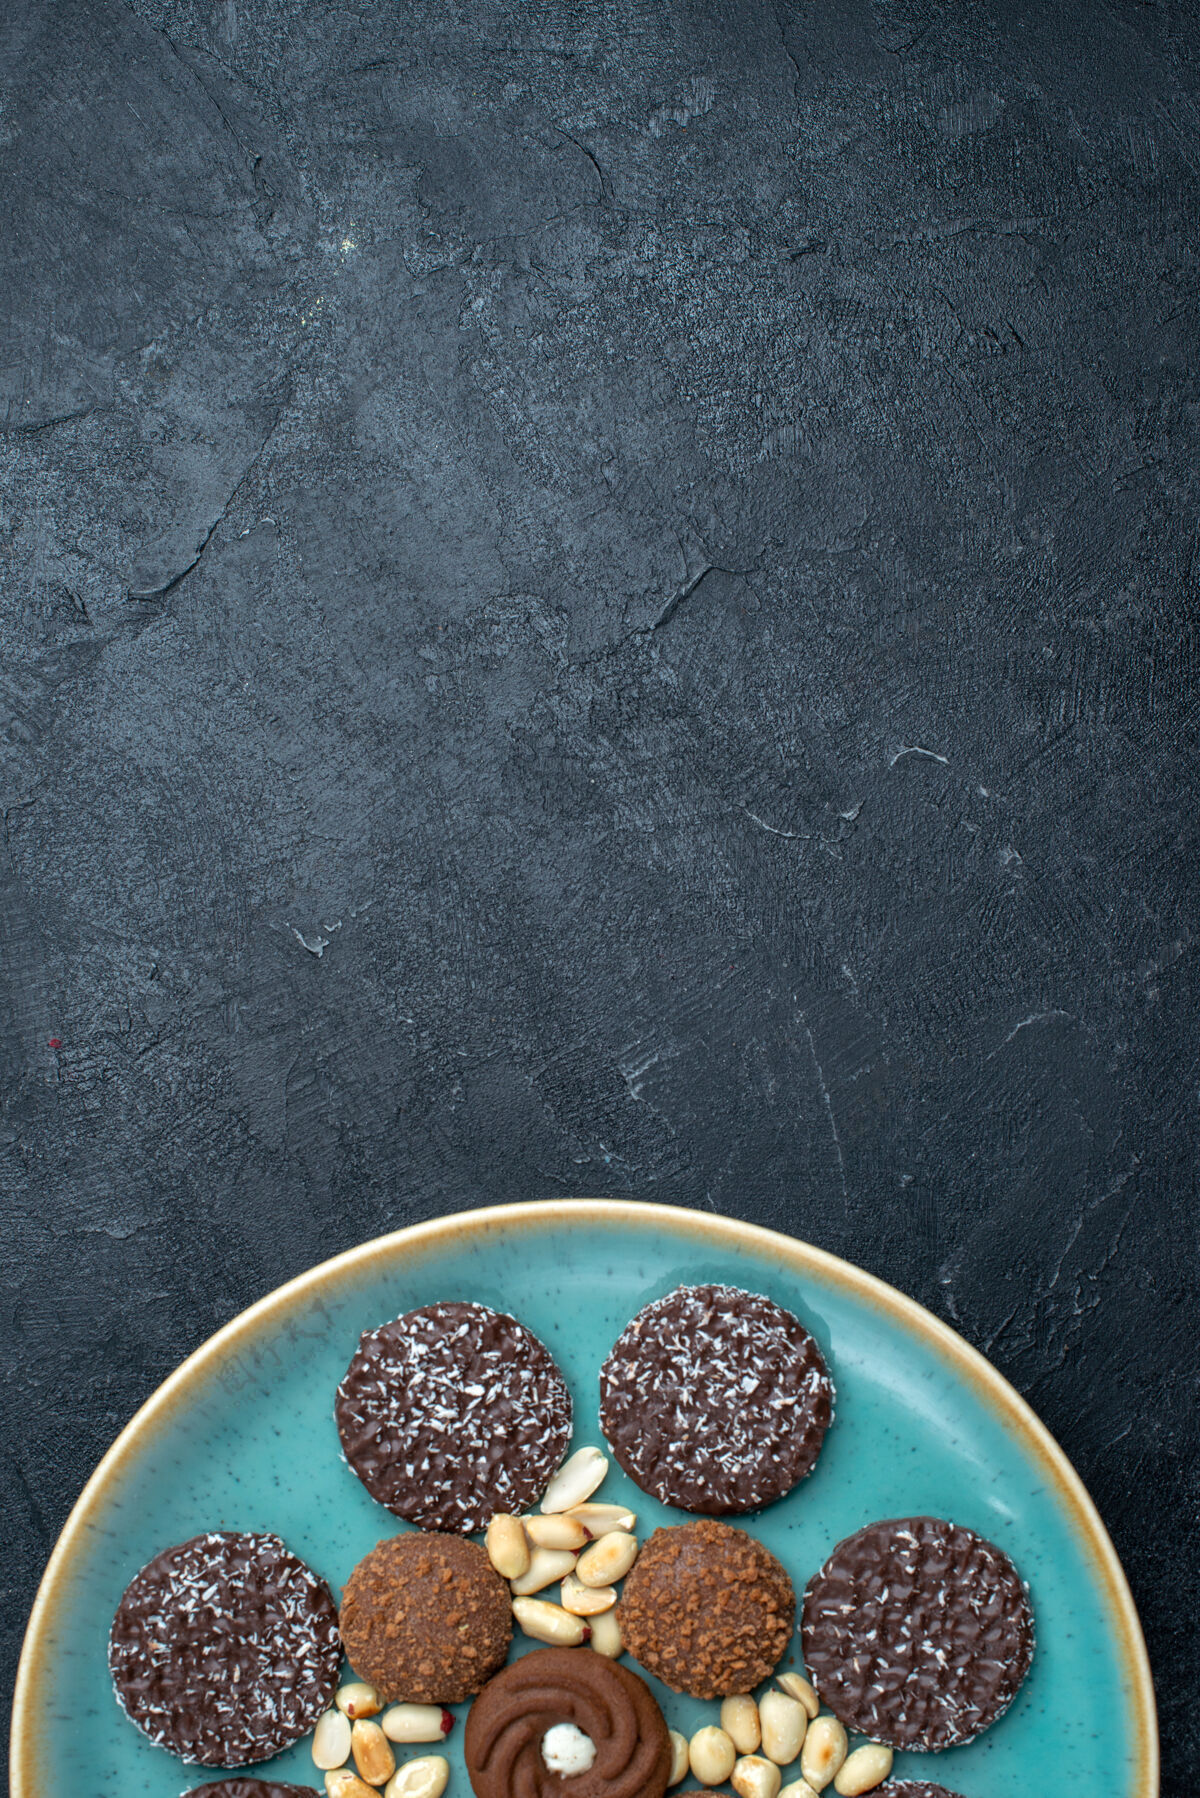 可食用的水果顶视图不同的巧克力饼干与坚果在深灰色背景糖饼干甜蛋糕派饼干黑樱桃坚果新鲜